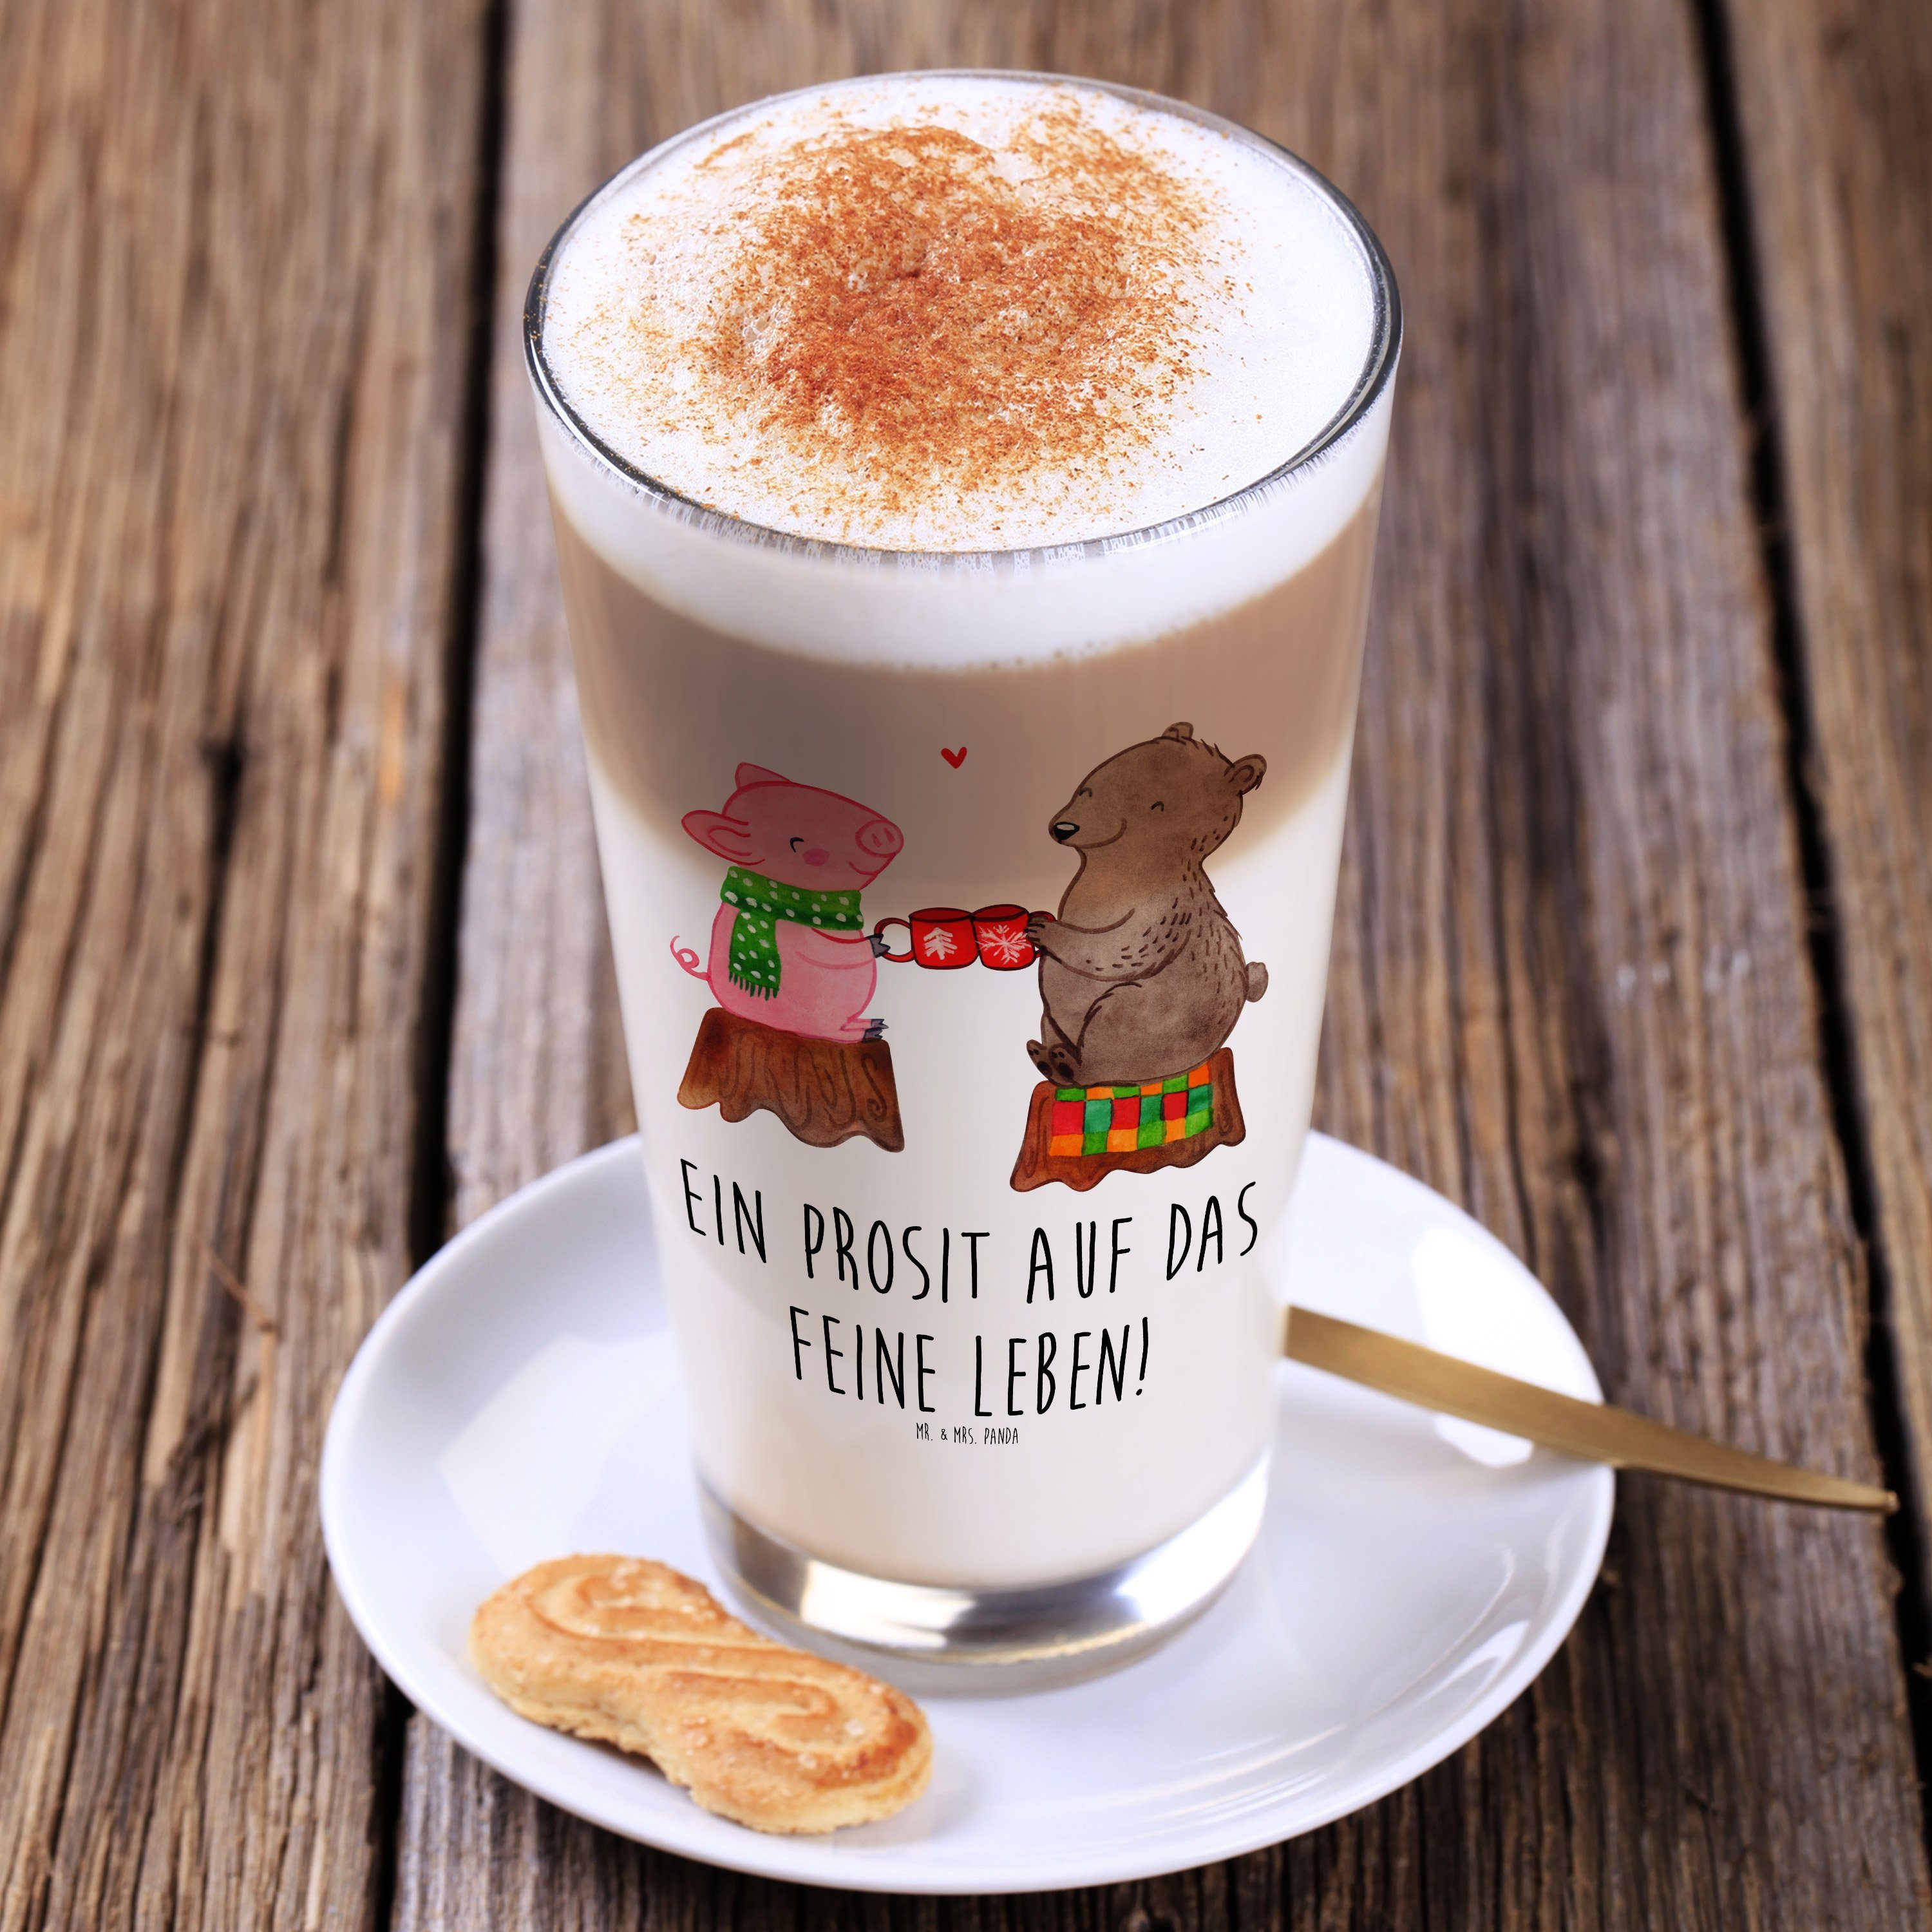 Mac, Geschenk, Mr. Premium Glas & Weihnachtsdeko, - Mrs. Panda Sause Latte Transparent Glühschwein Glas -